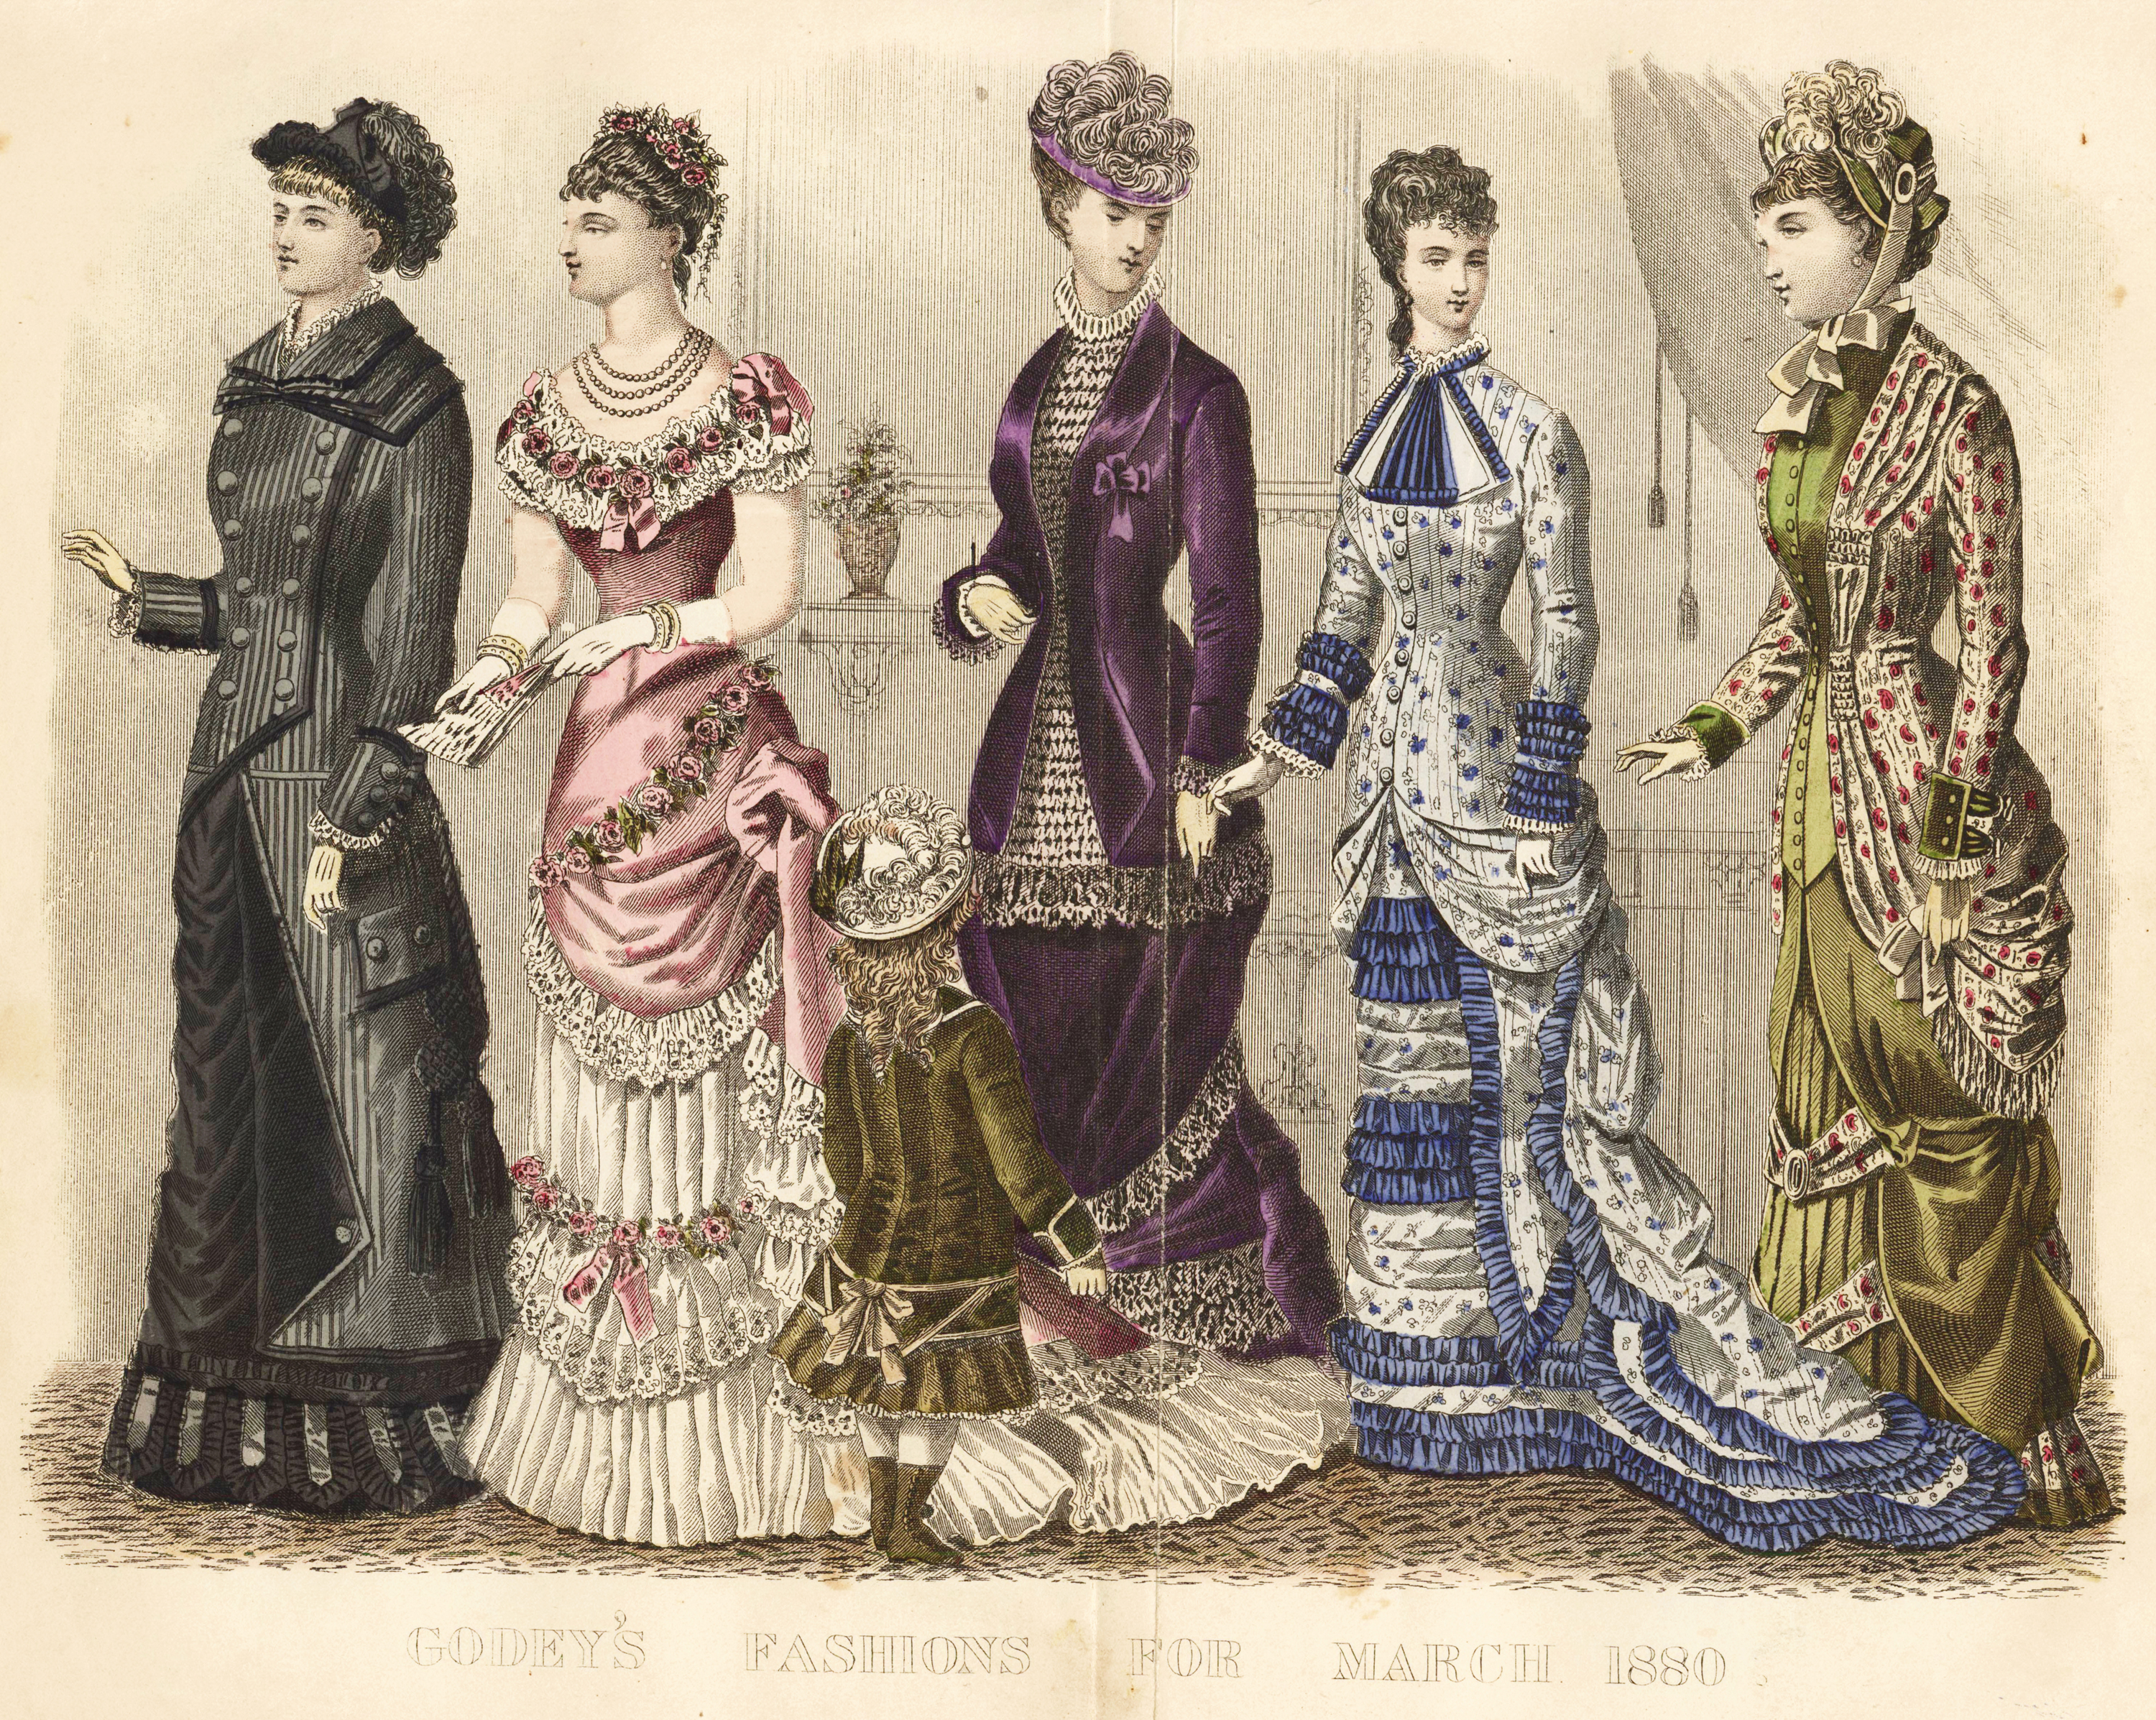 Модели 18 века. Мода викторианской эпохи 1880. Викторианская мода женская 1880. Века мода викторианской Англии 19. Мода викторианской эпохи 1870.